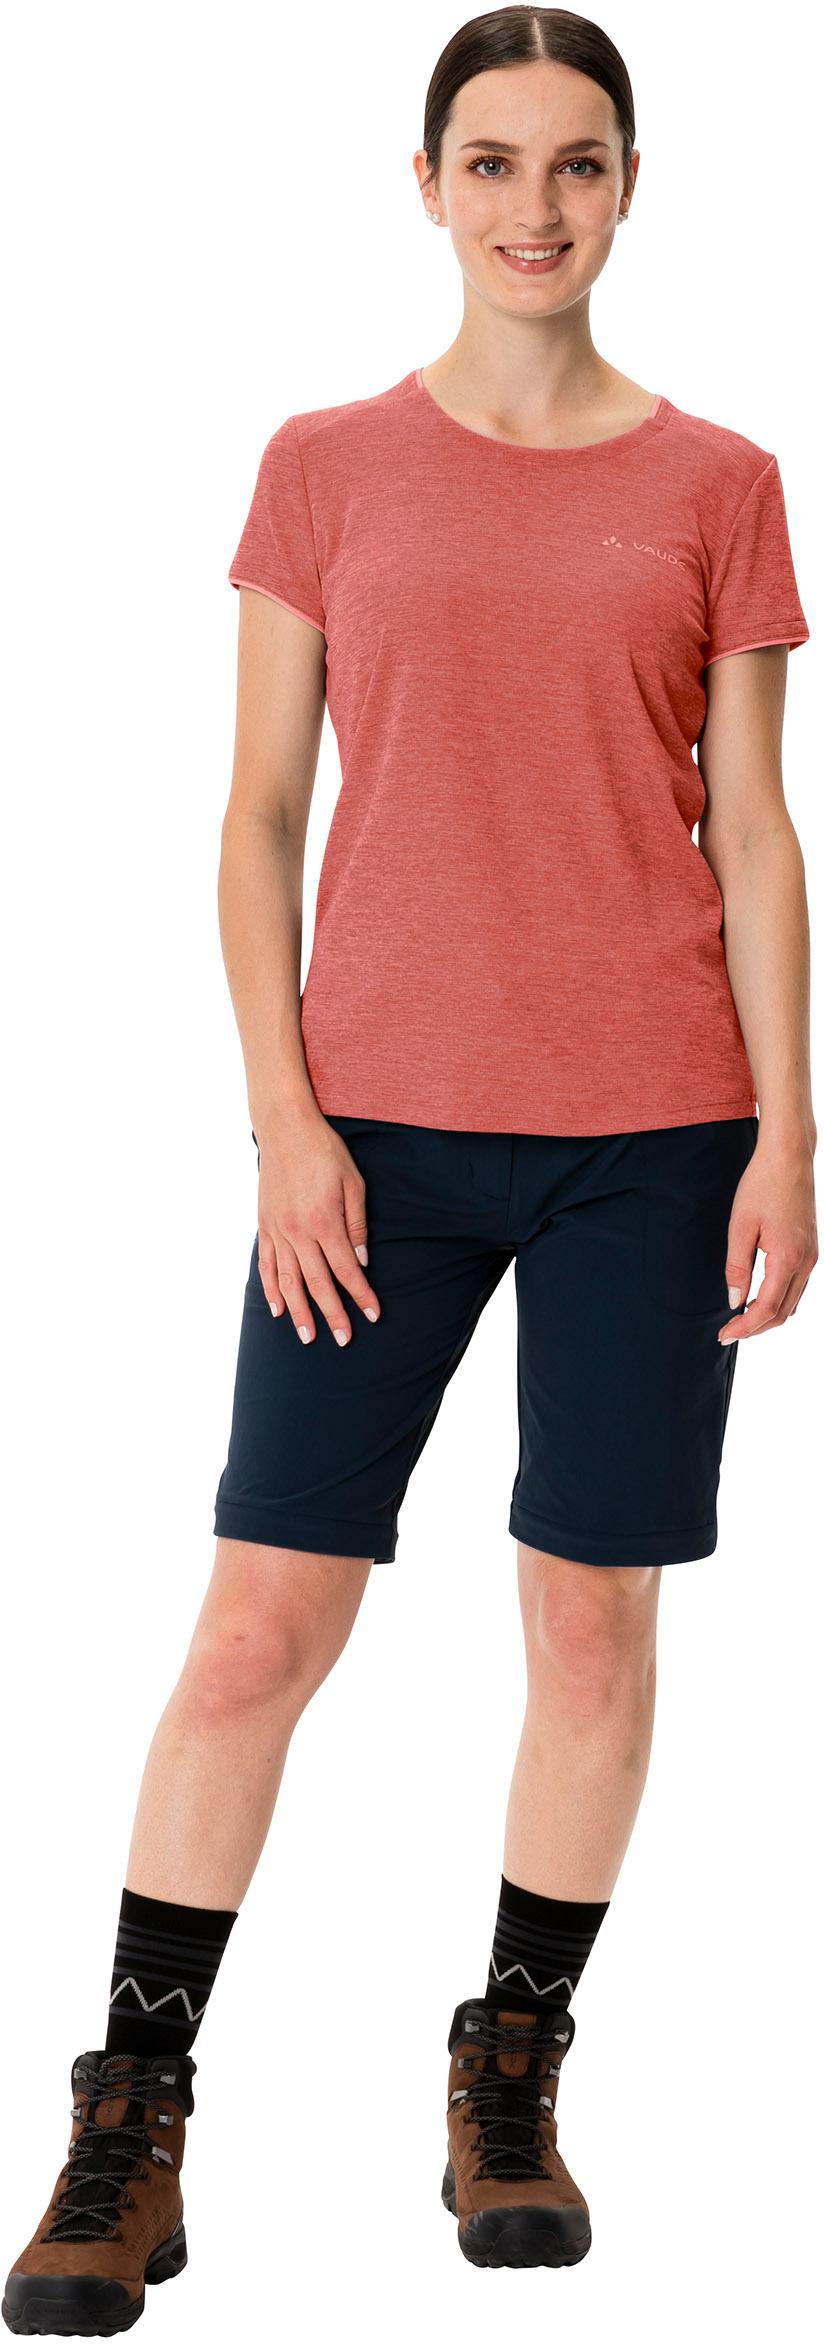 VAUDE Essential Funktionsshirt Damen hotchili kaufen im SportScheck Online von Shop